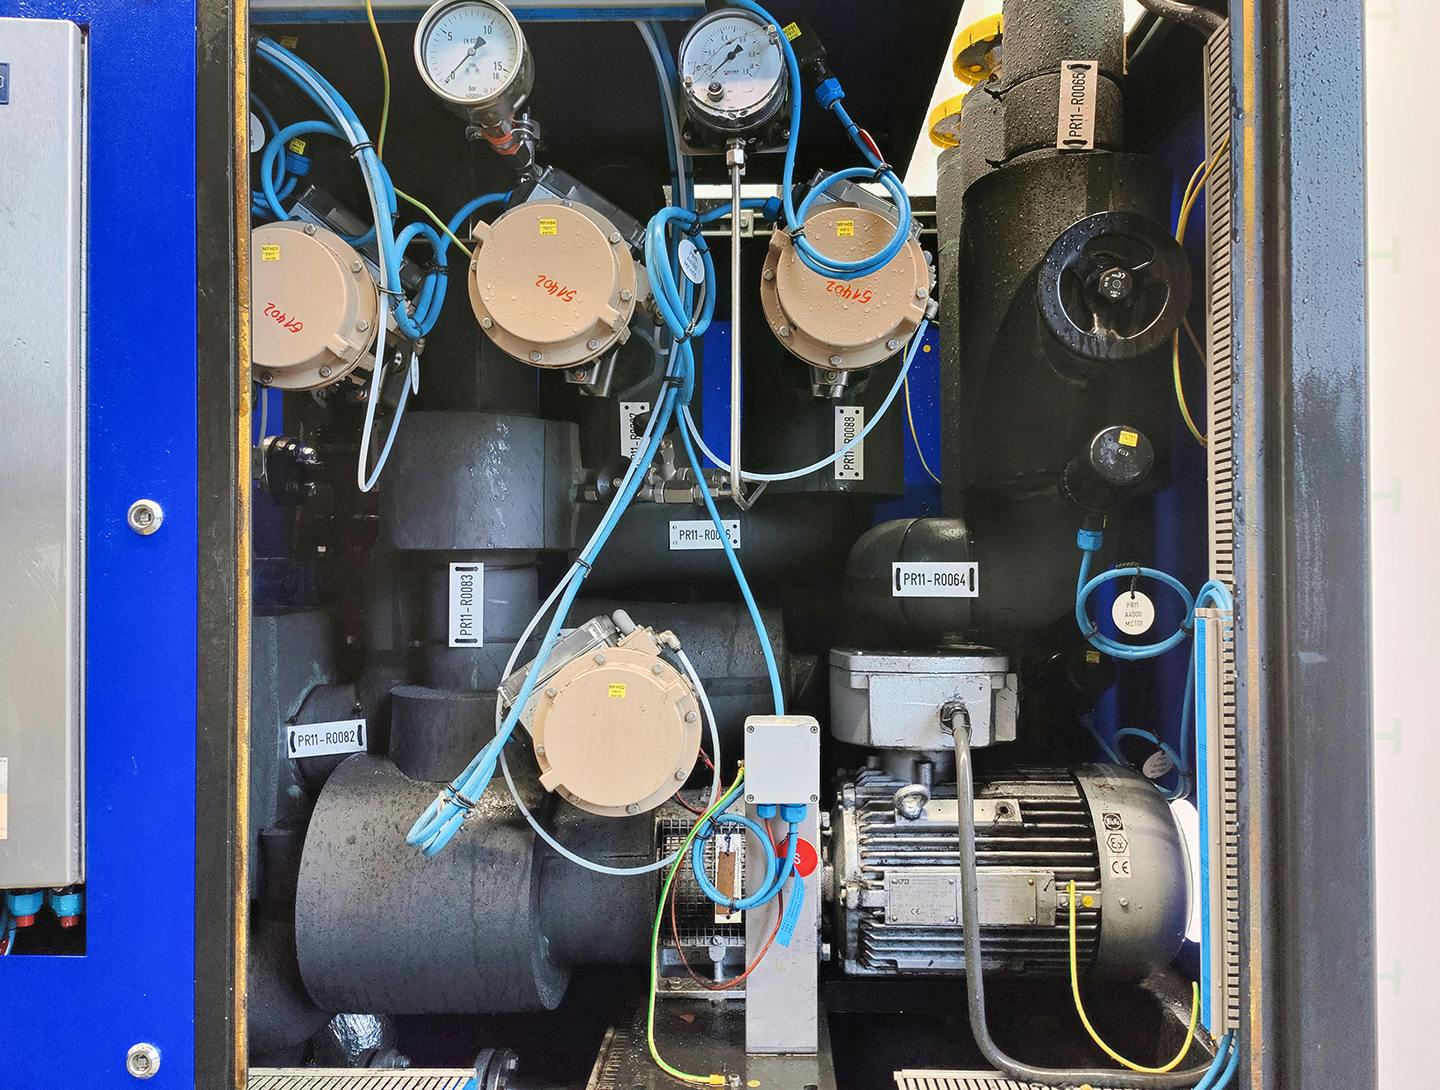 Lauda TR400 HK/KT-EX "secondary circuit system" - Temperature control unit - image 9